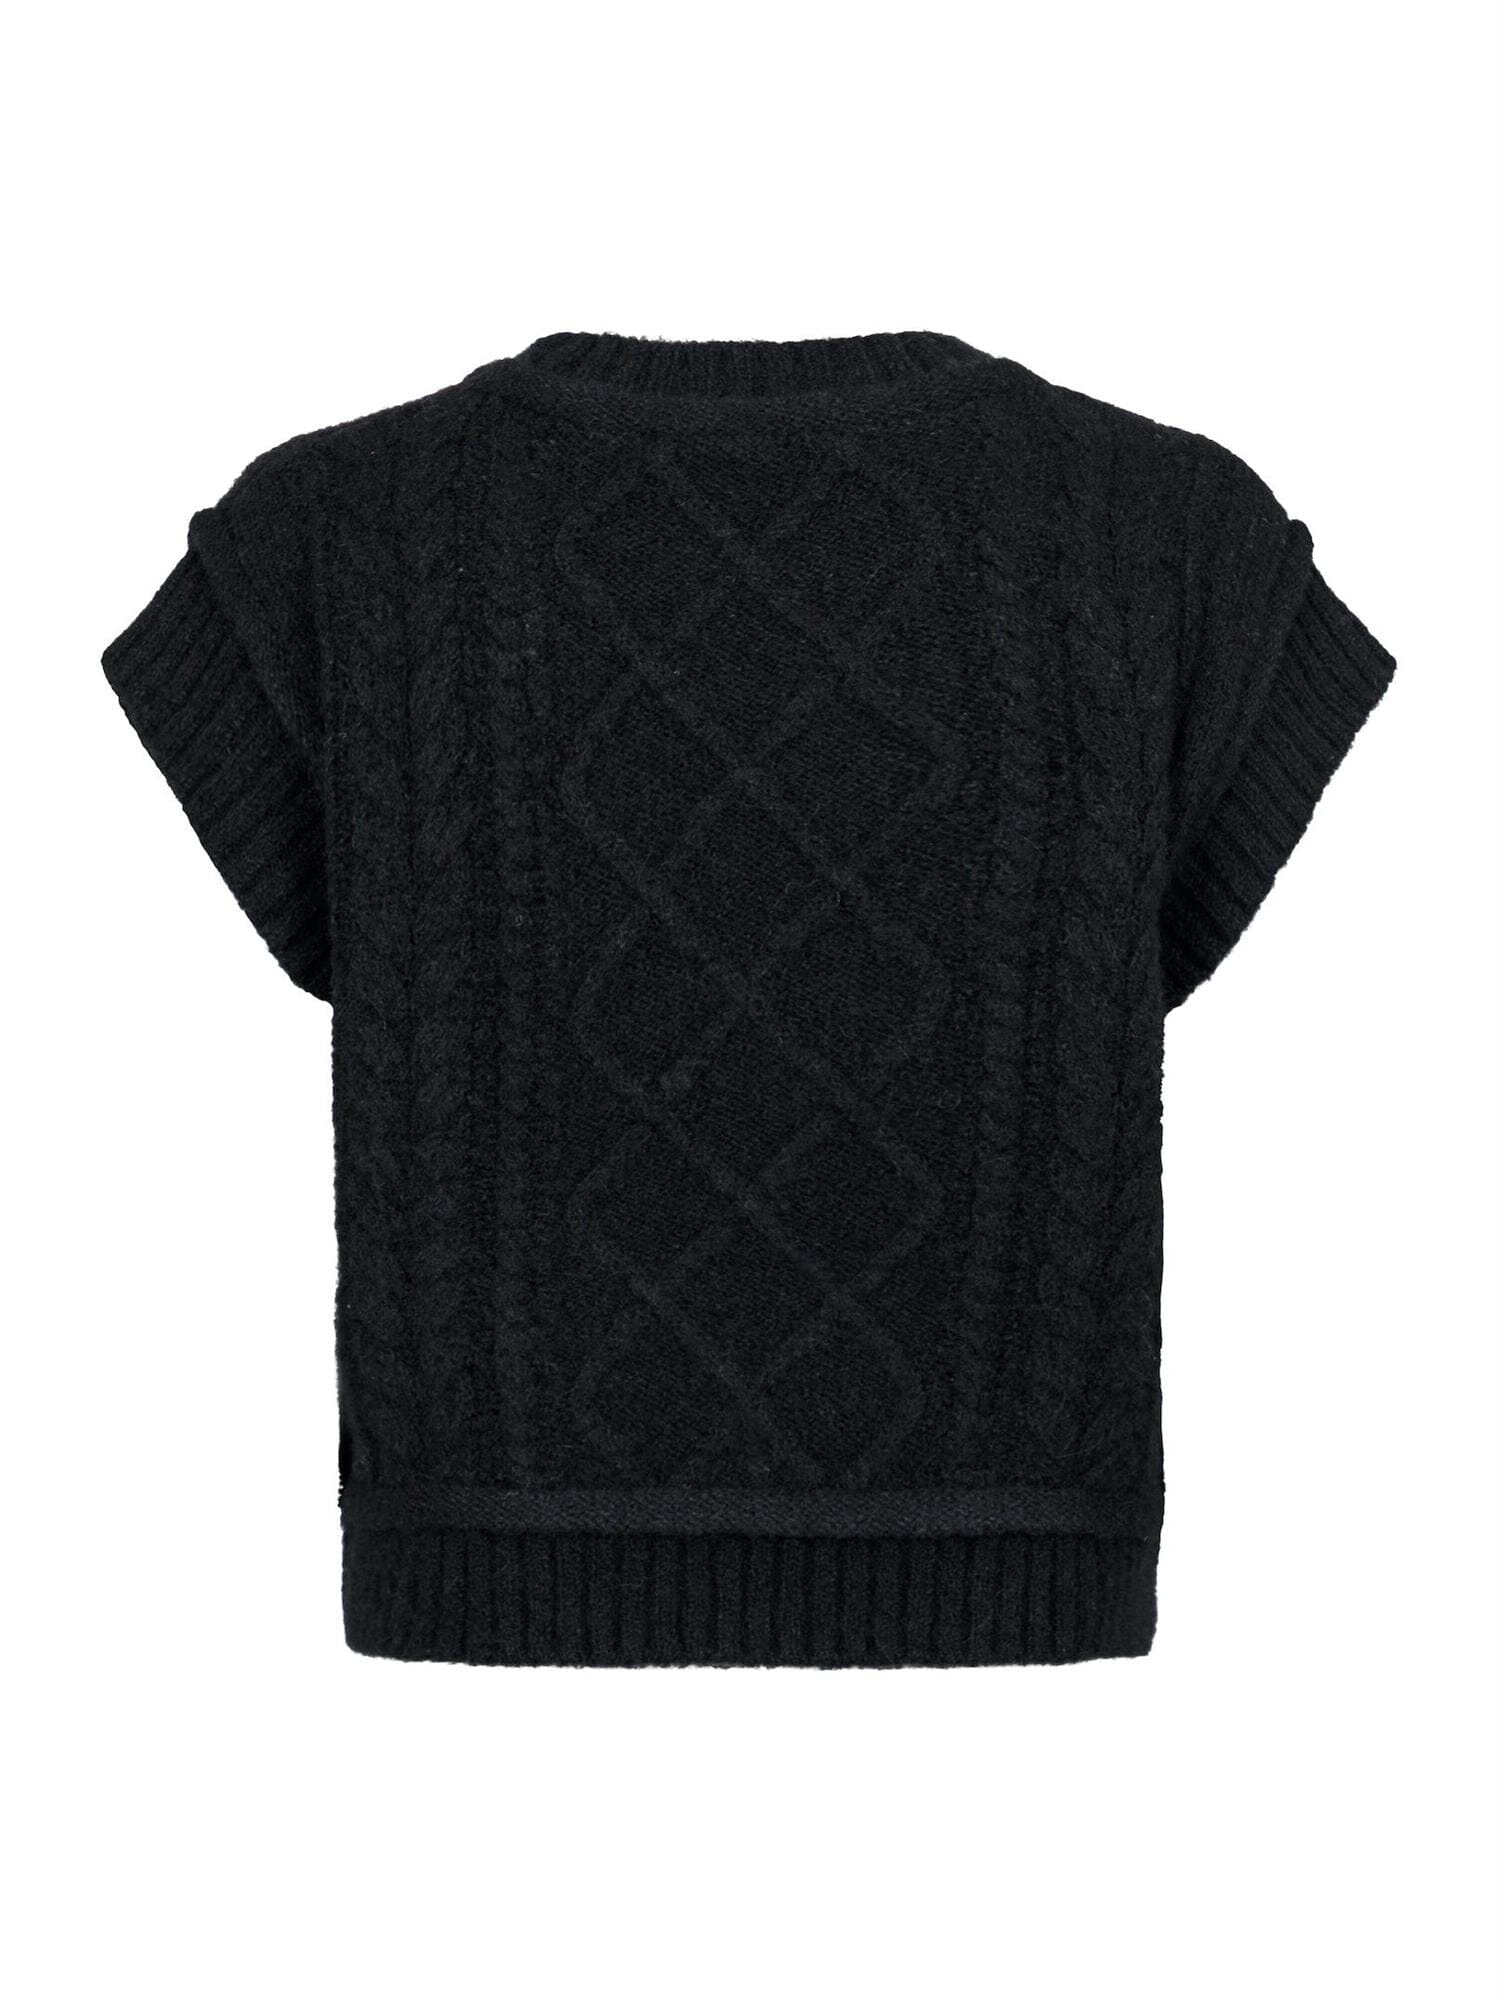 Neo Noir Malley Knit Waistcoat Black Genser